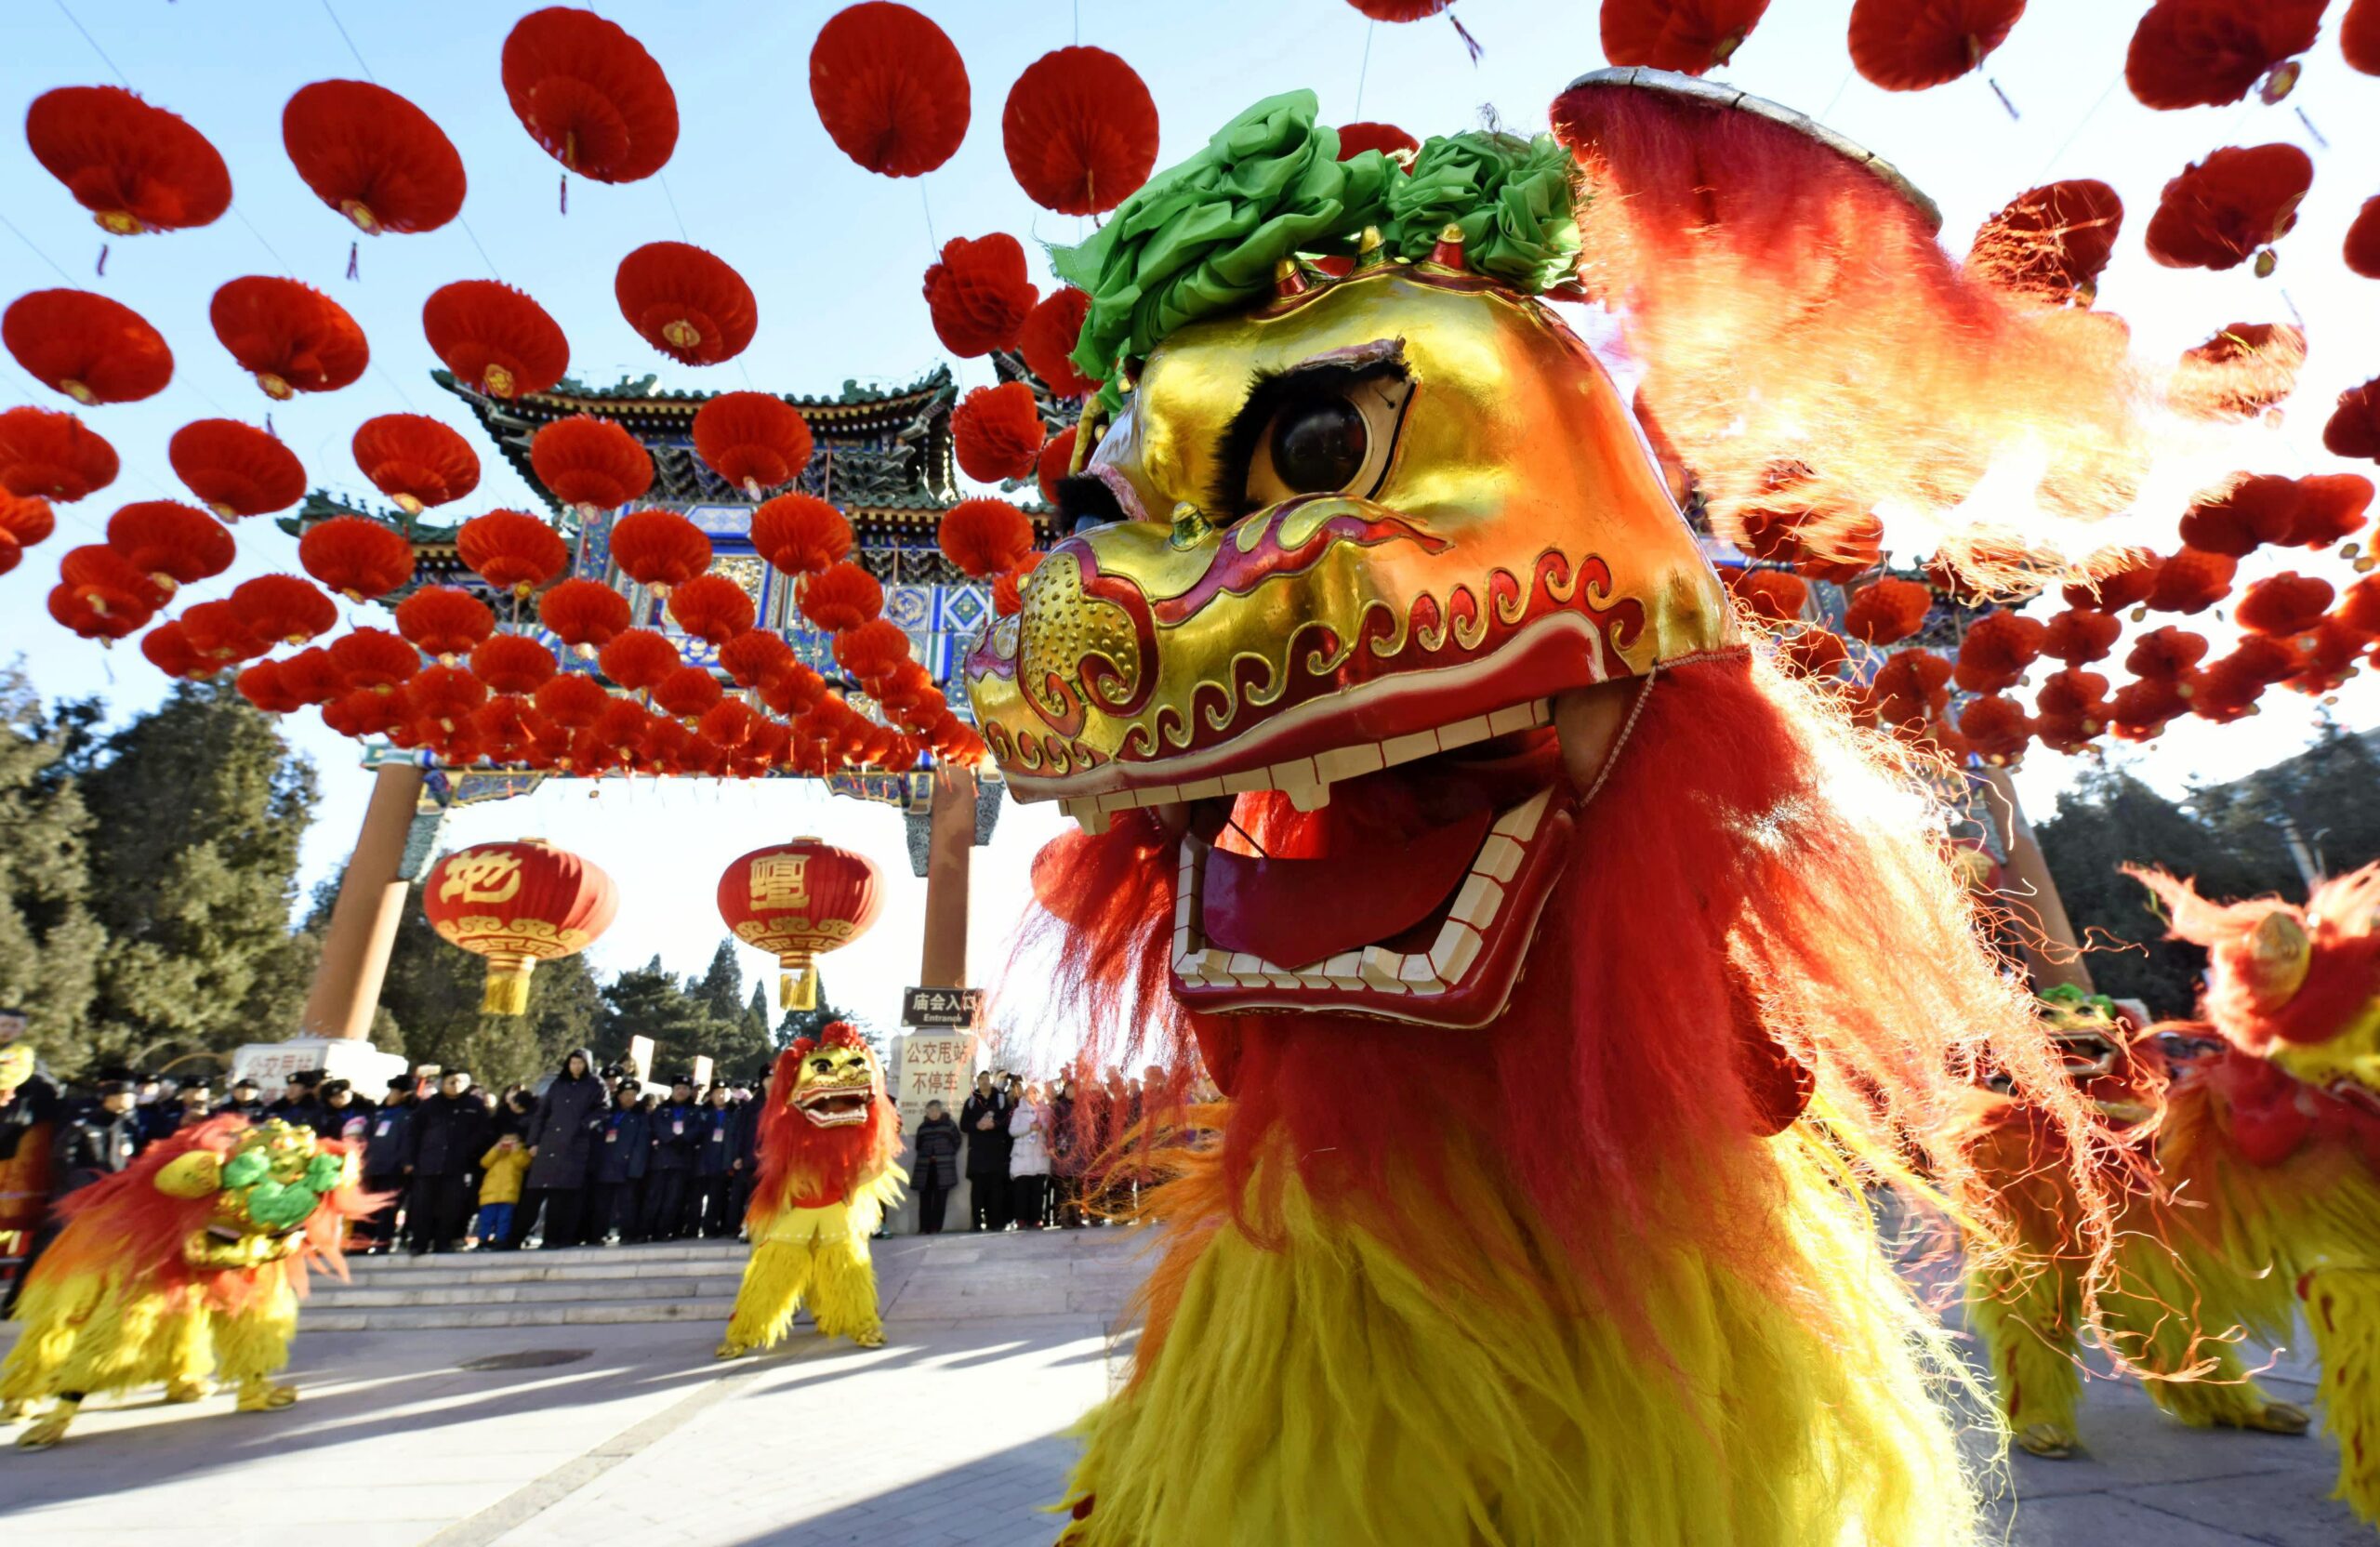 Meriahkan Tahun Baru China dengan 10 Dekorasi Imlek 2020 | Biar Makin Hoki!